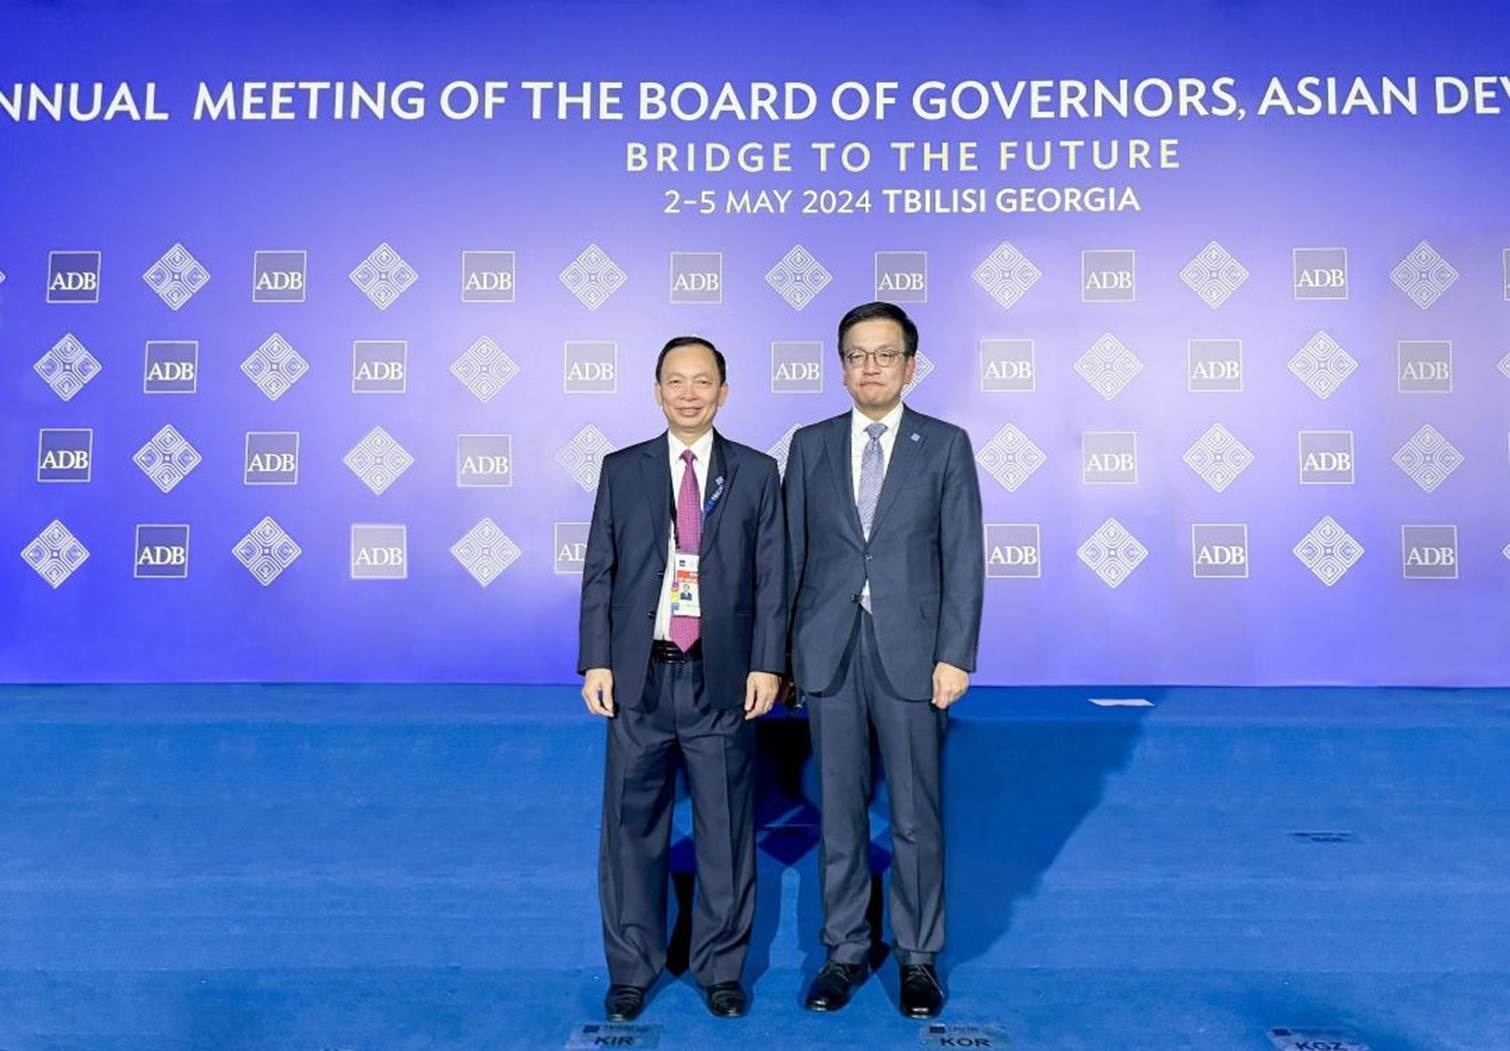 Phó Thống đốc Đào Minh Tú chụp ảnh lưu niệm cùng Phó Thủ tướng kiêm Bộ trưởng Kinh tế và Tài chính Hàn Quốc